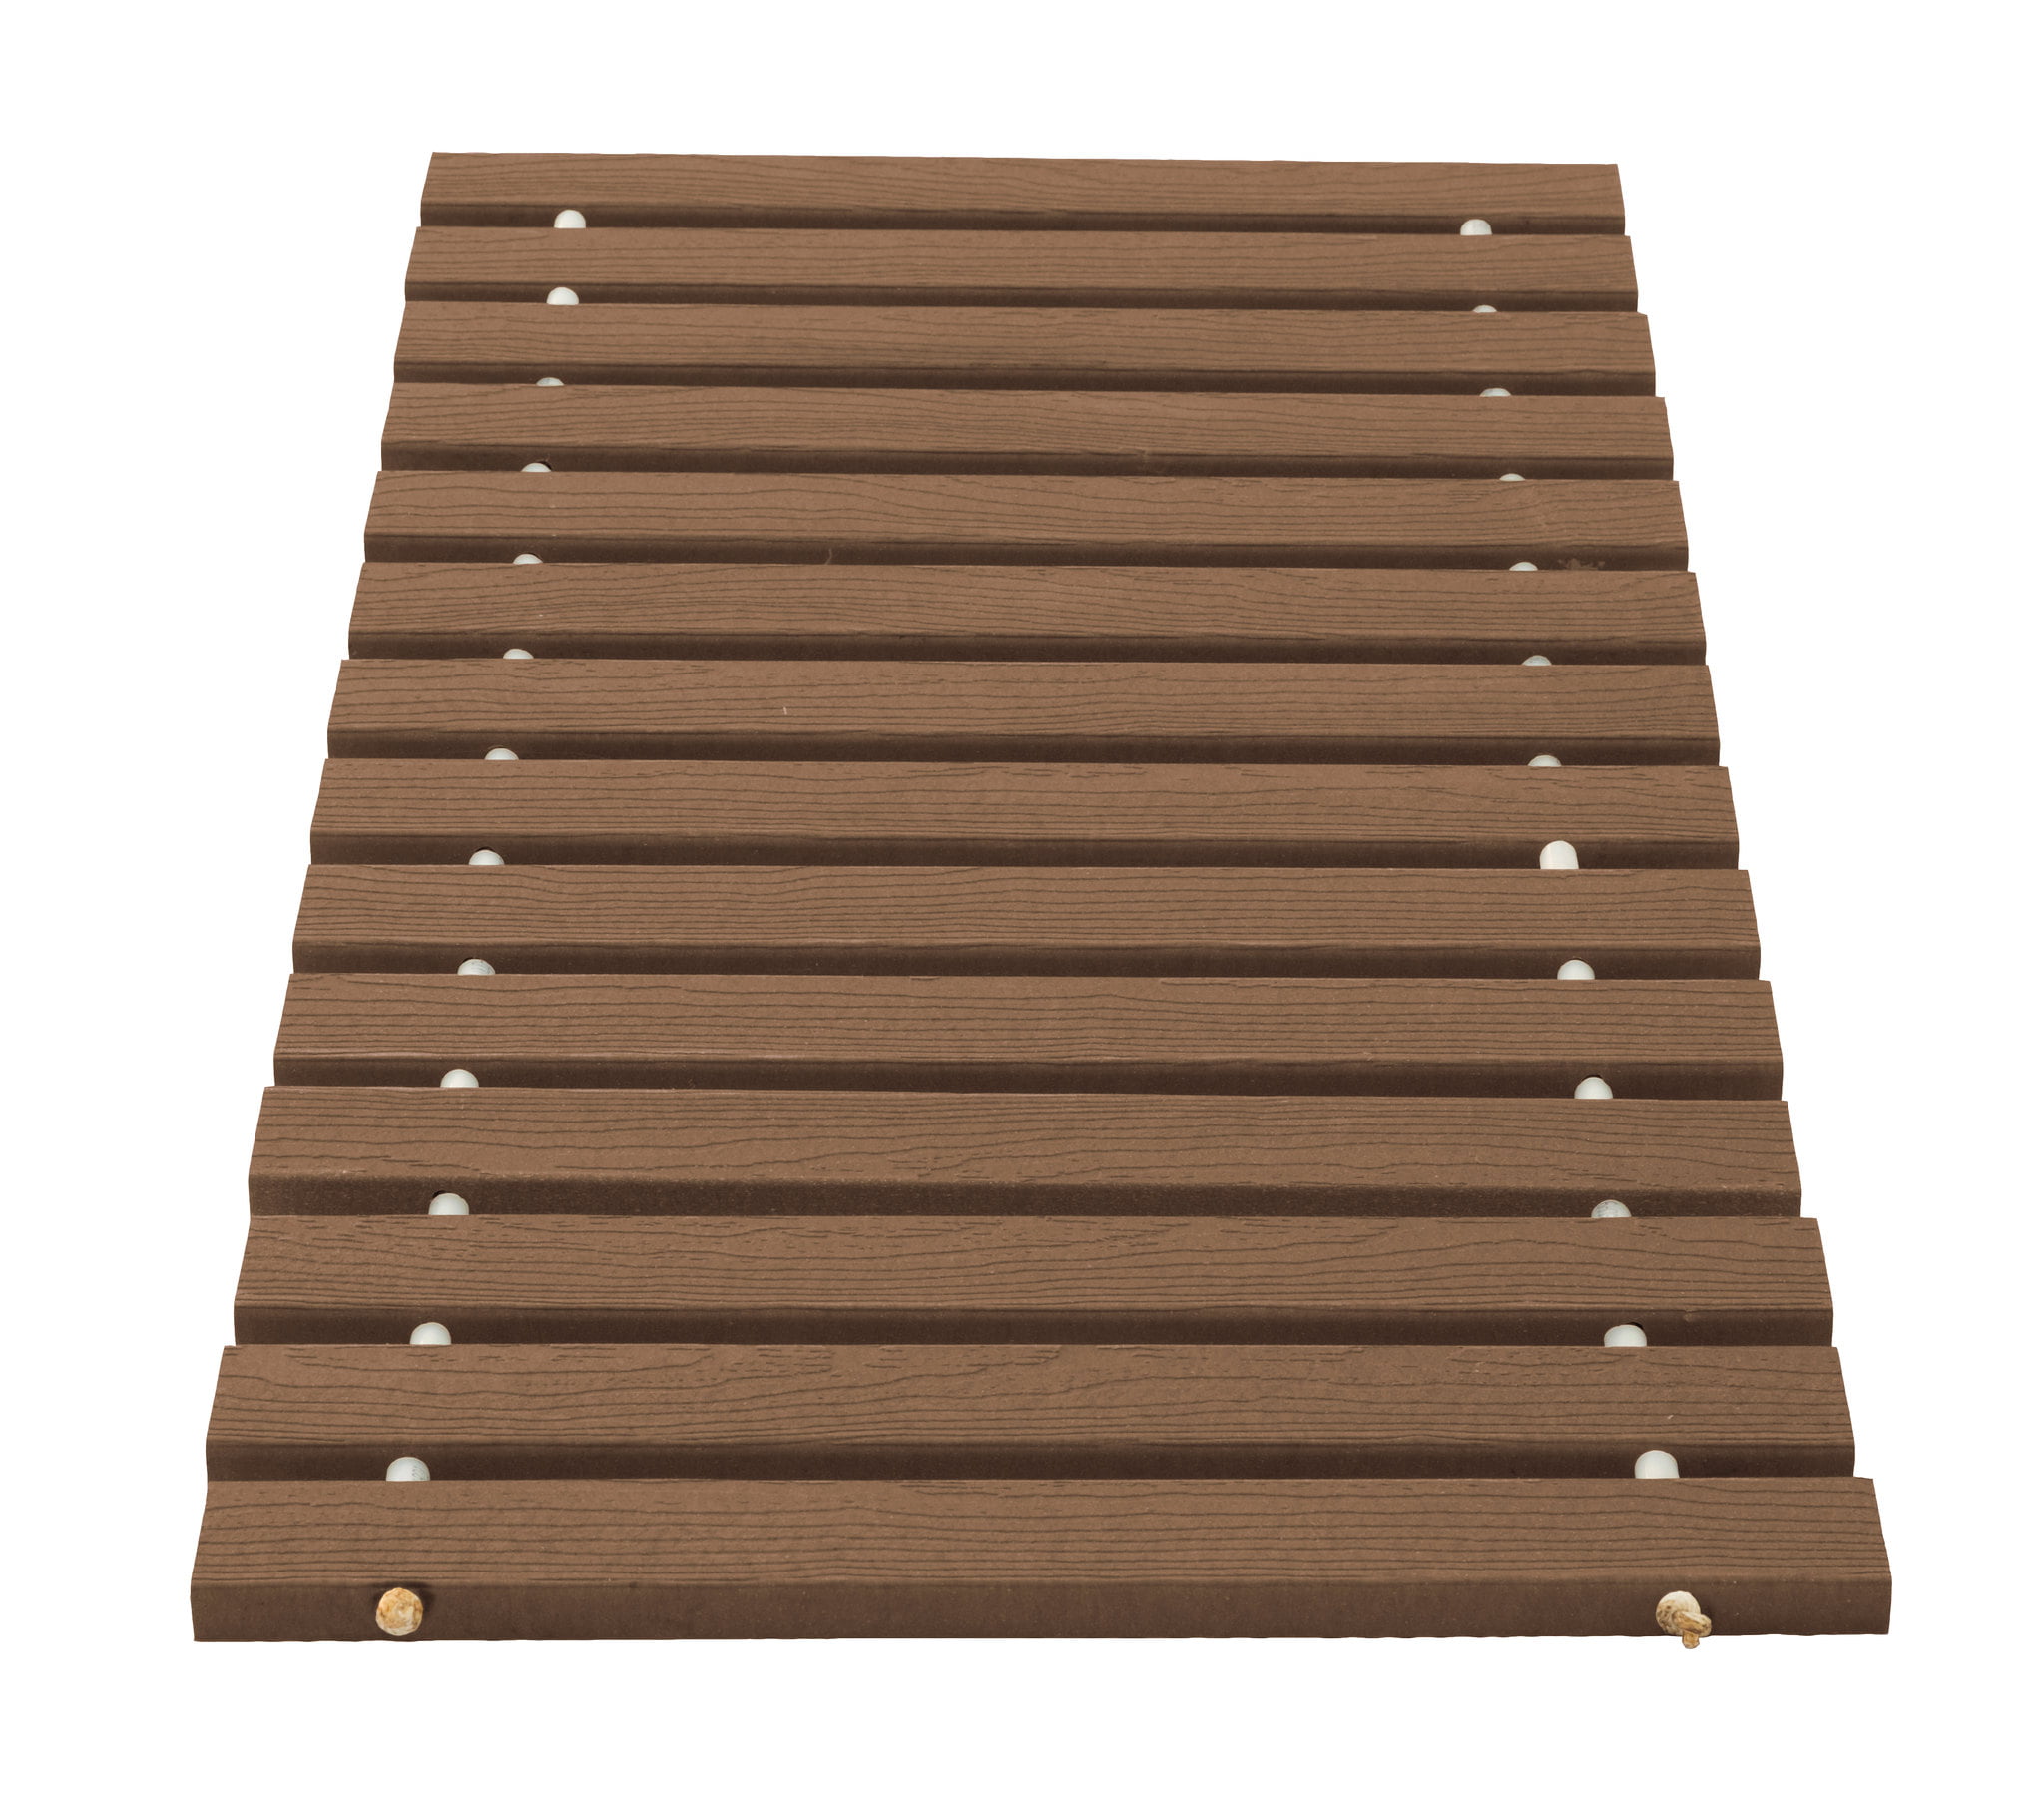 2 Ft Length in Dusk Gray Wide Roll-Up Walkway/Boardwalk in PVC Deck Board Furniture Barn USA 2 Ft 